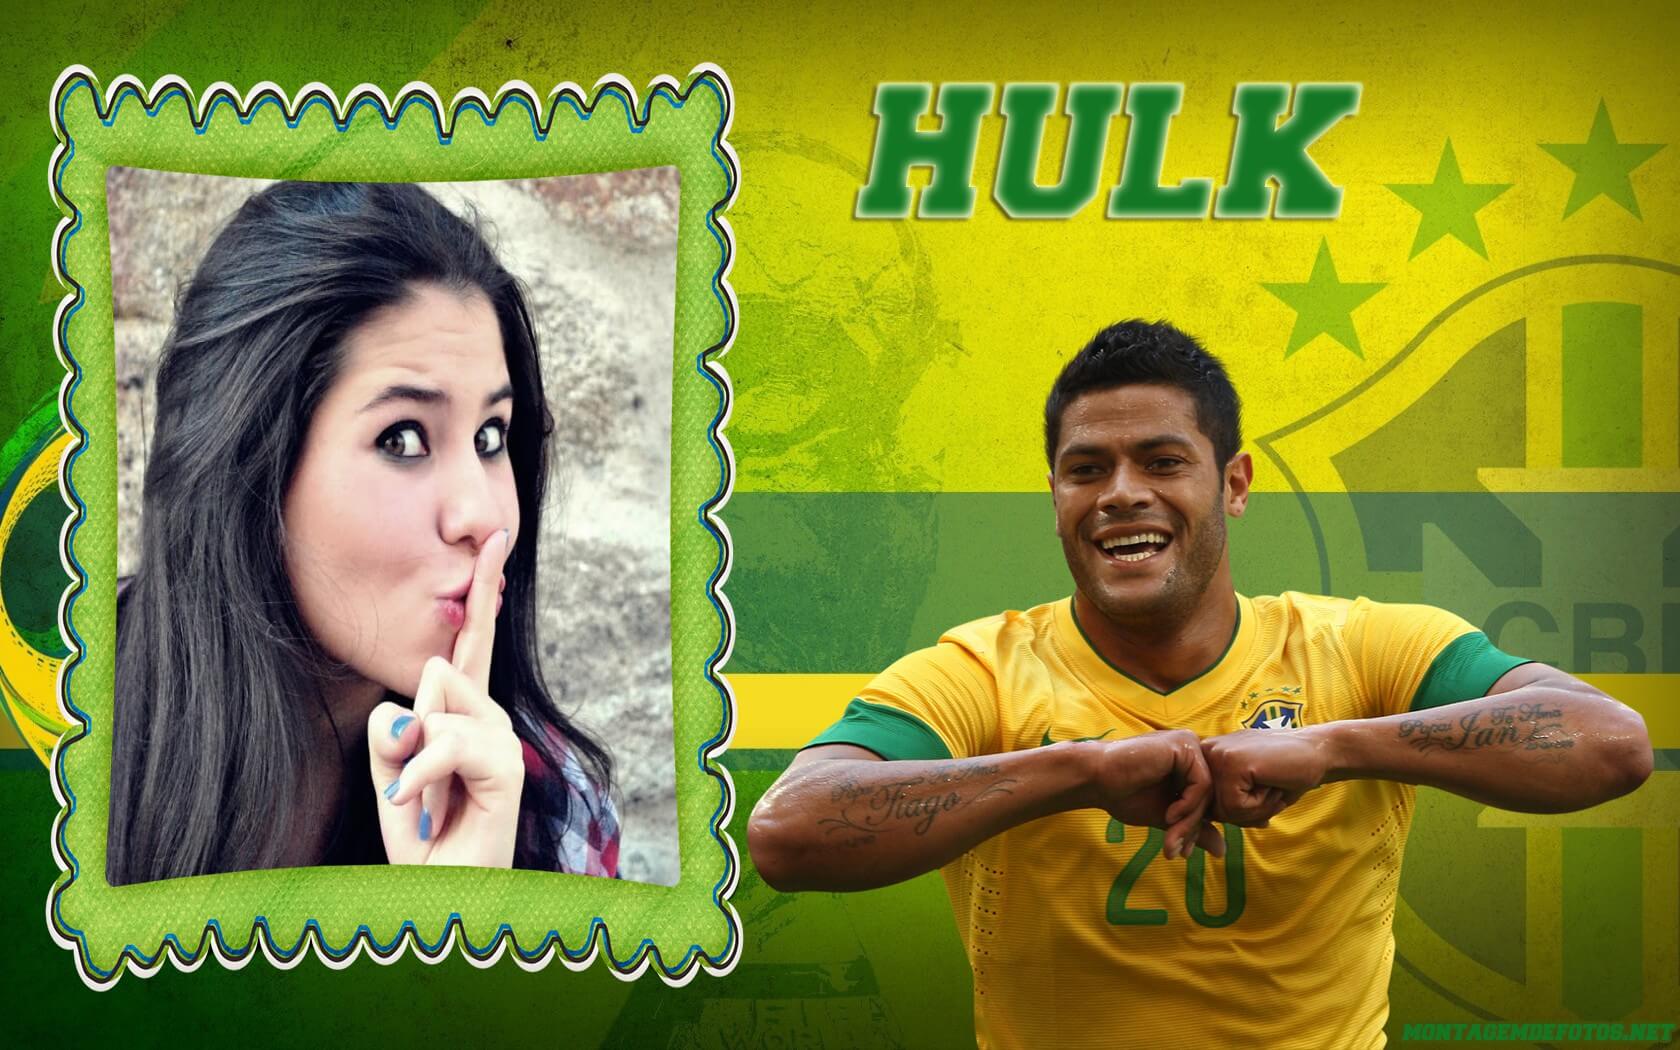 moldura-jogador-de-futebol-do-brasil-hulk